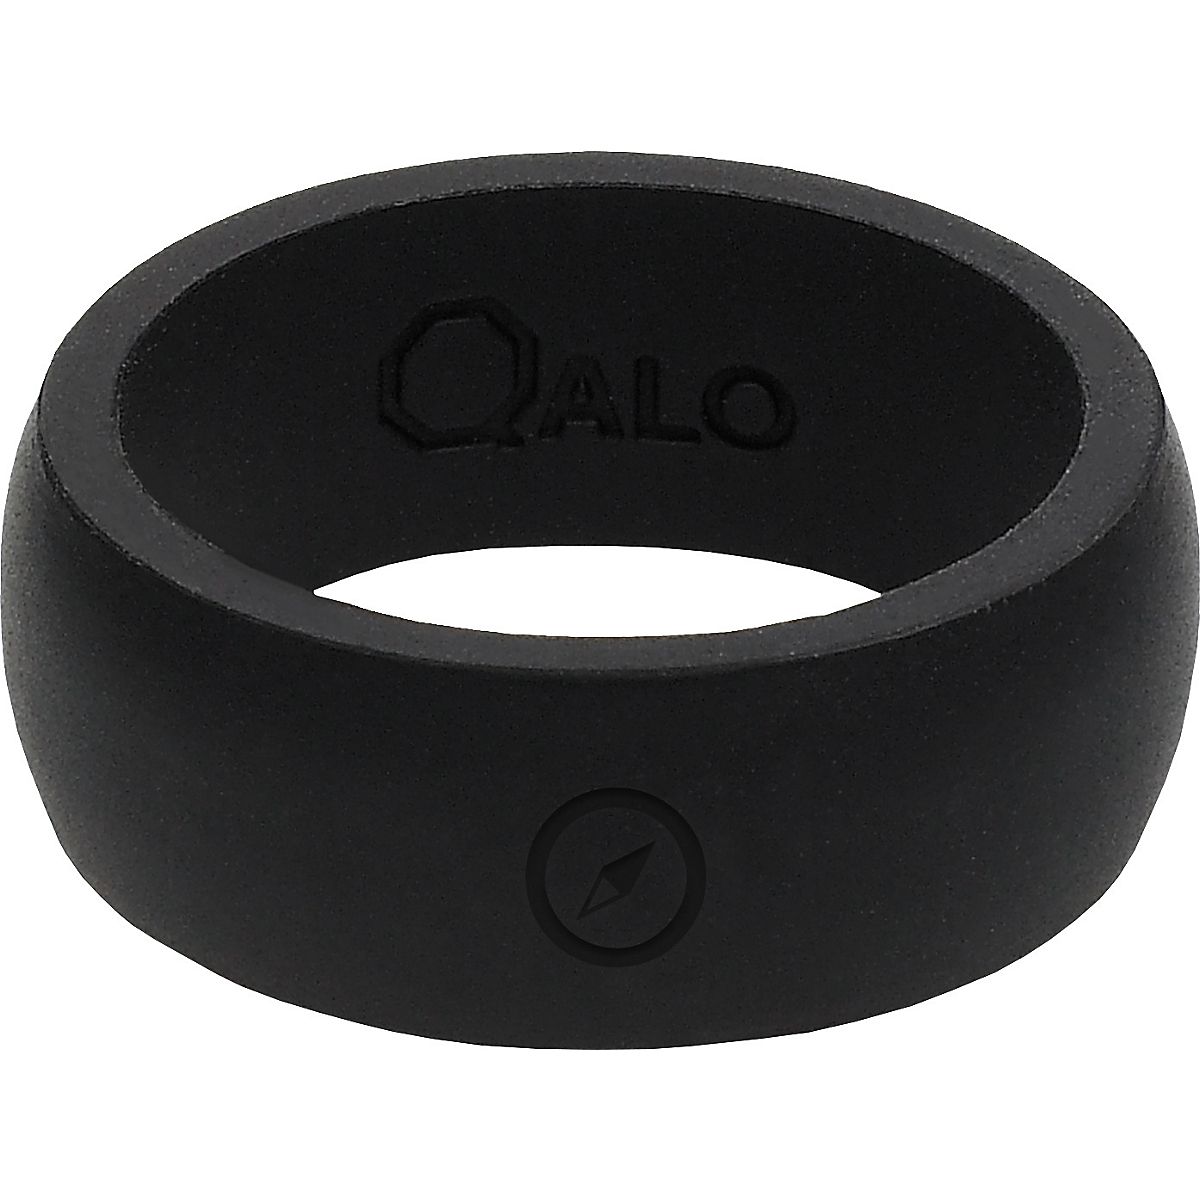 QALO Men's Athletics Wedding Ring